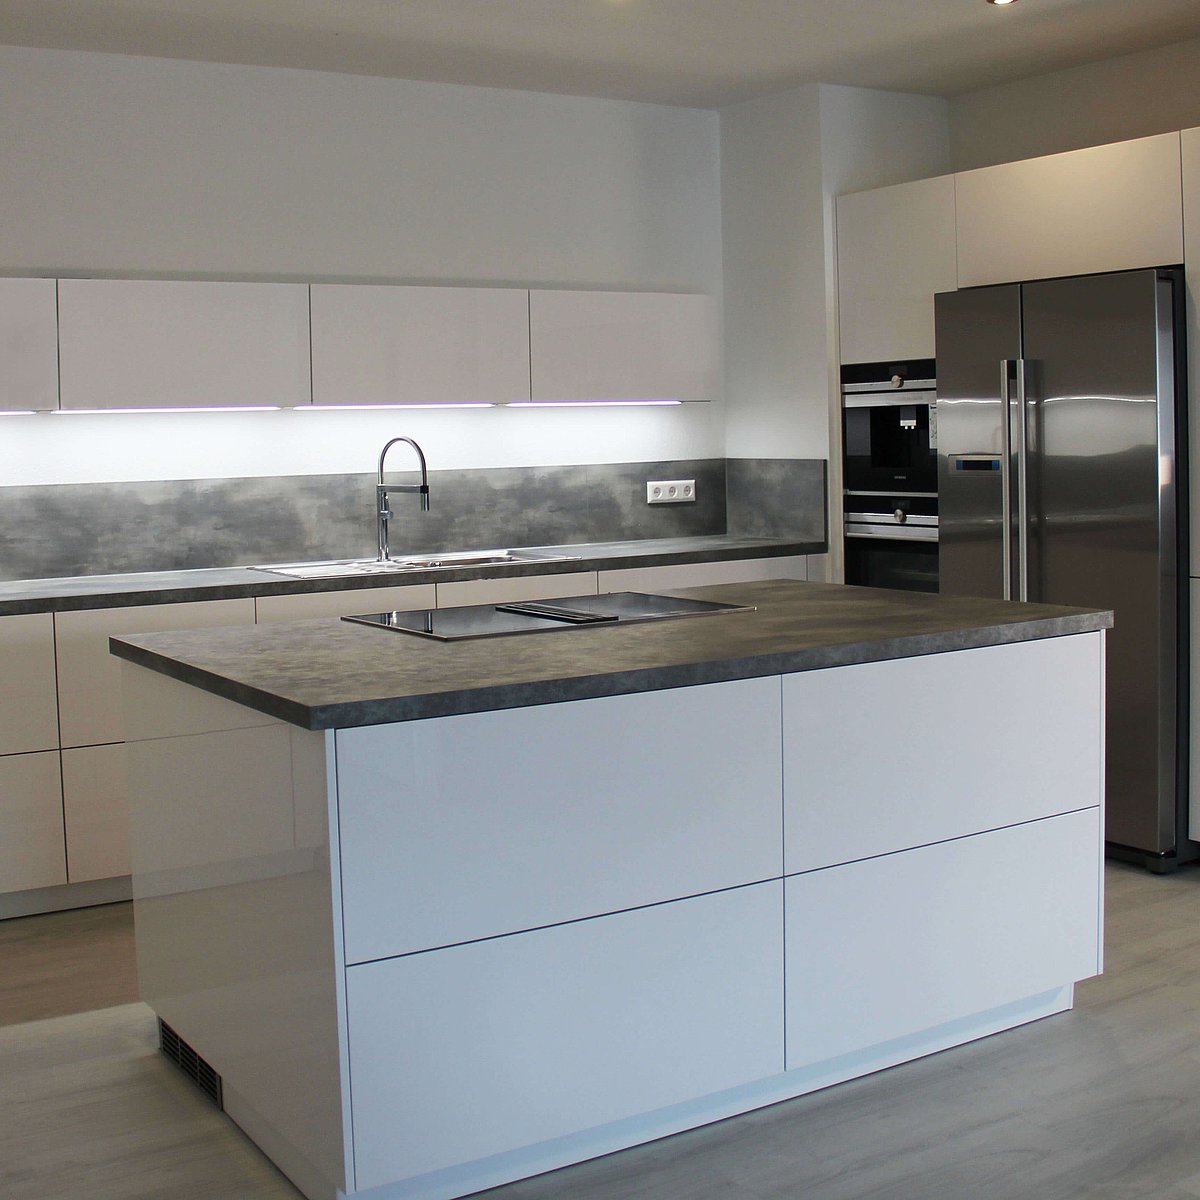 Kücheninsel in weiß mit grauer Kunststein Arbeitsplatte